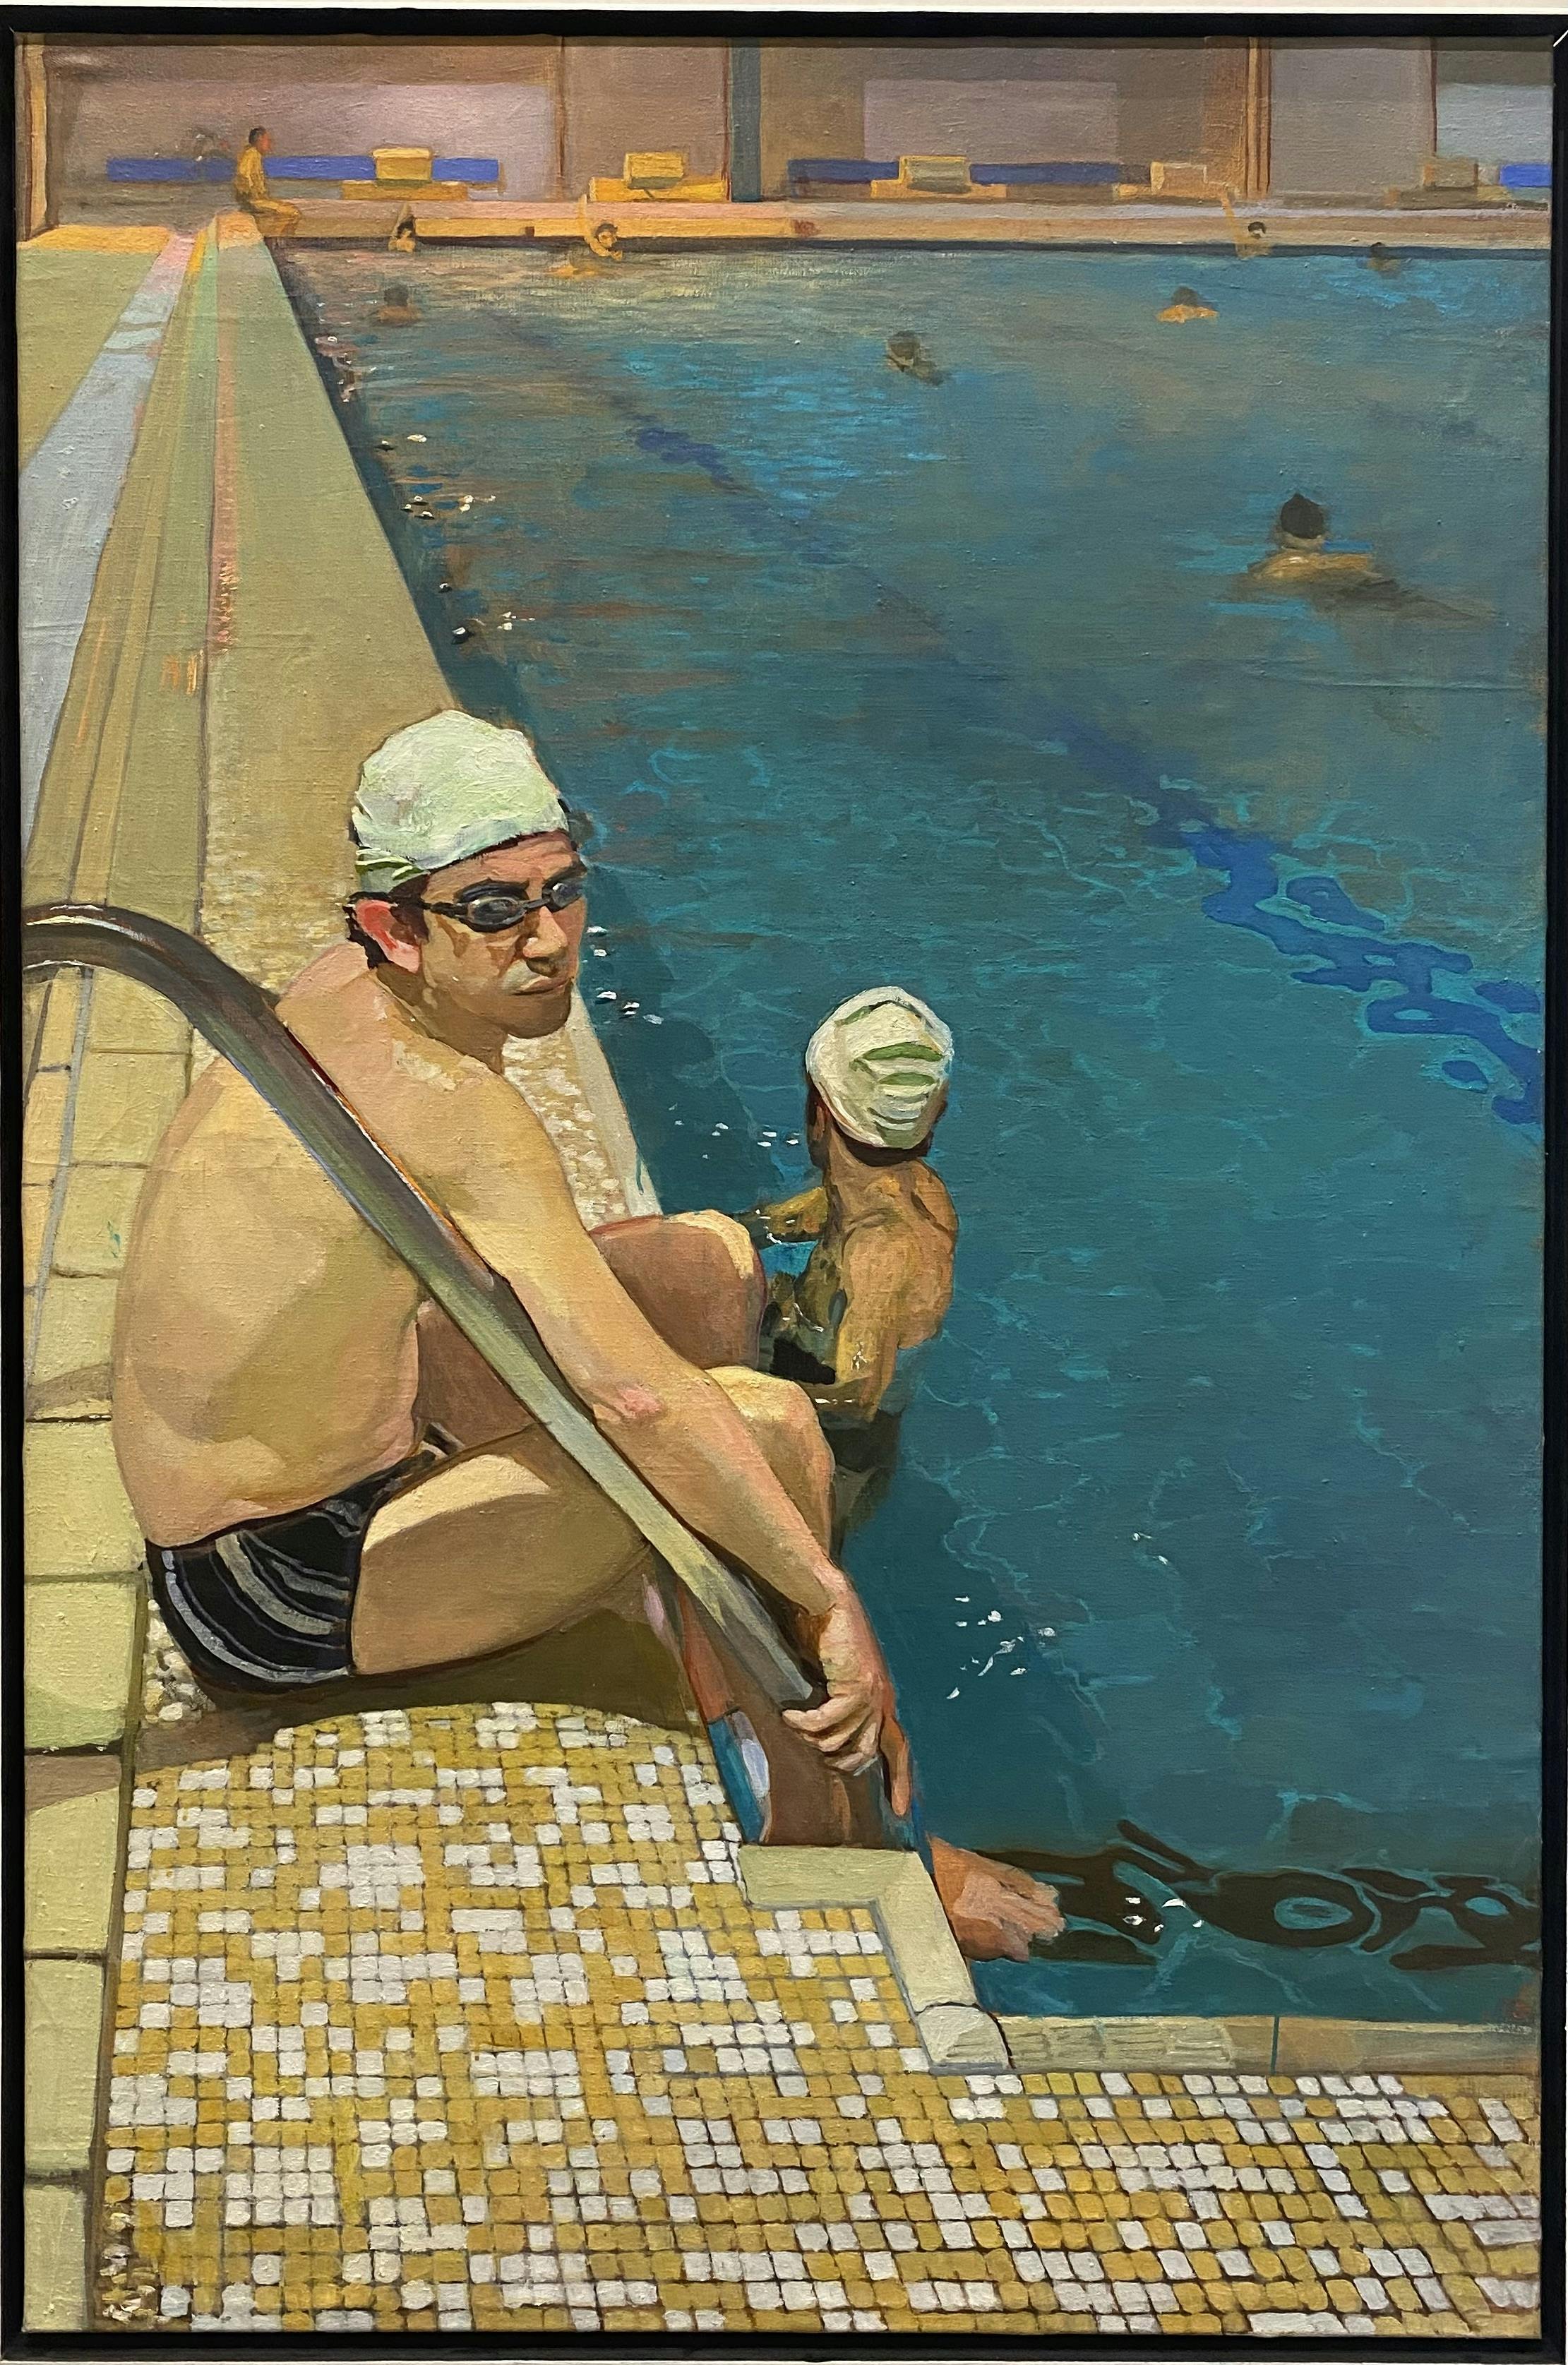 Piscine, 1996, huile sur toile 147,5 x 100 cm - Collection particulière